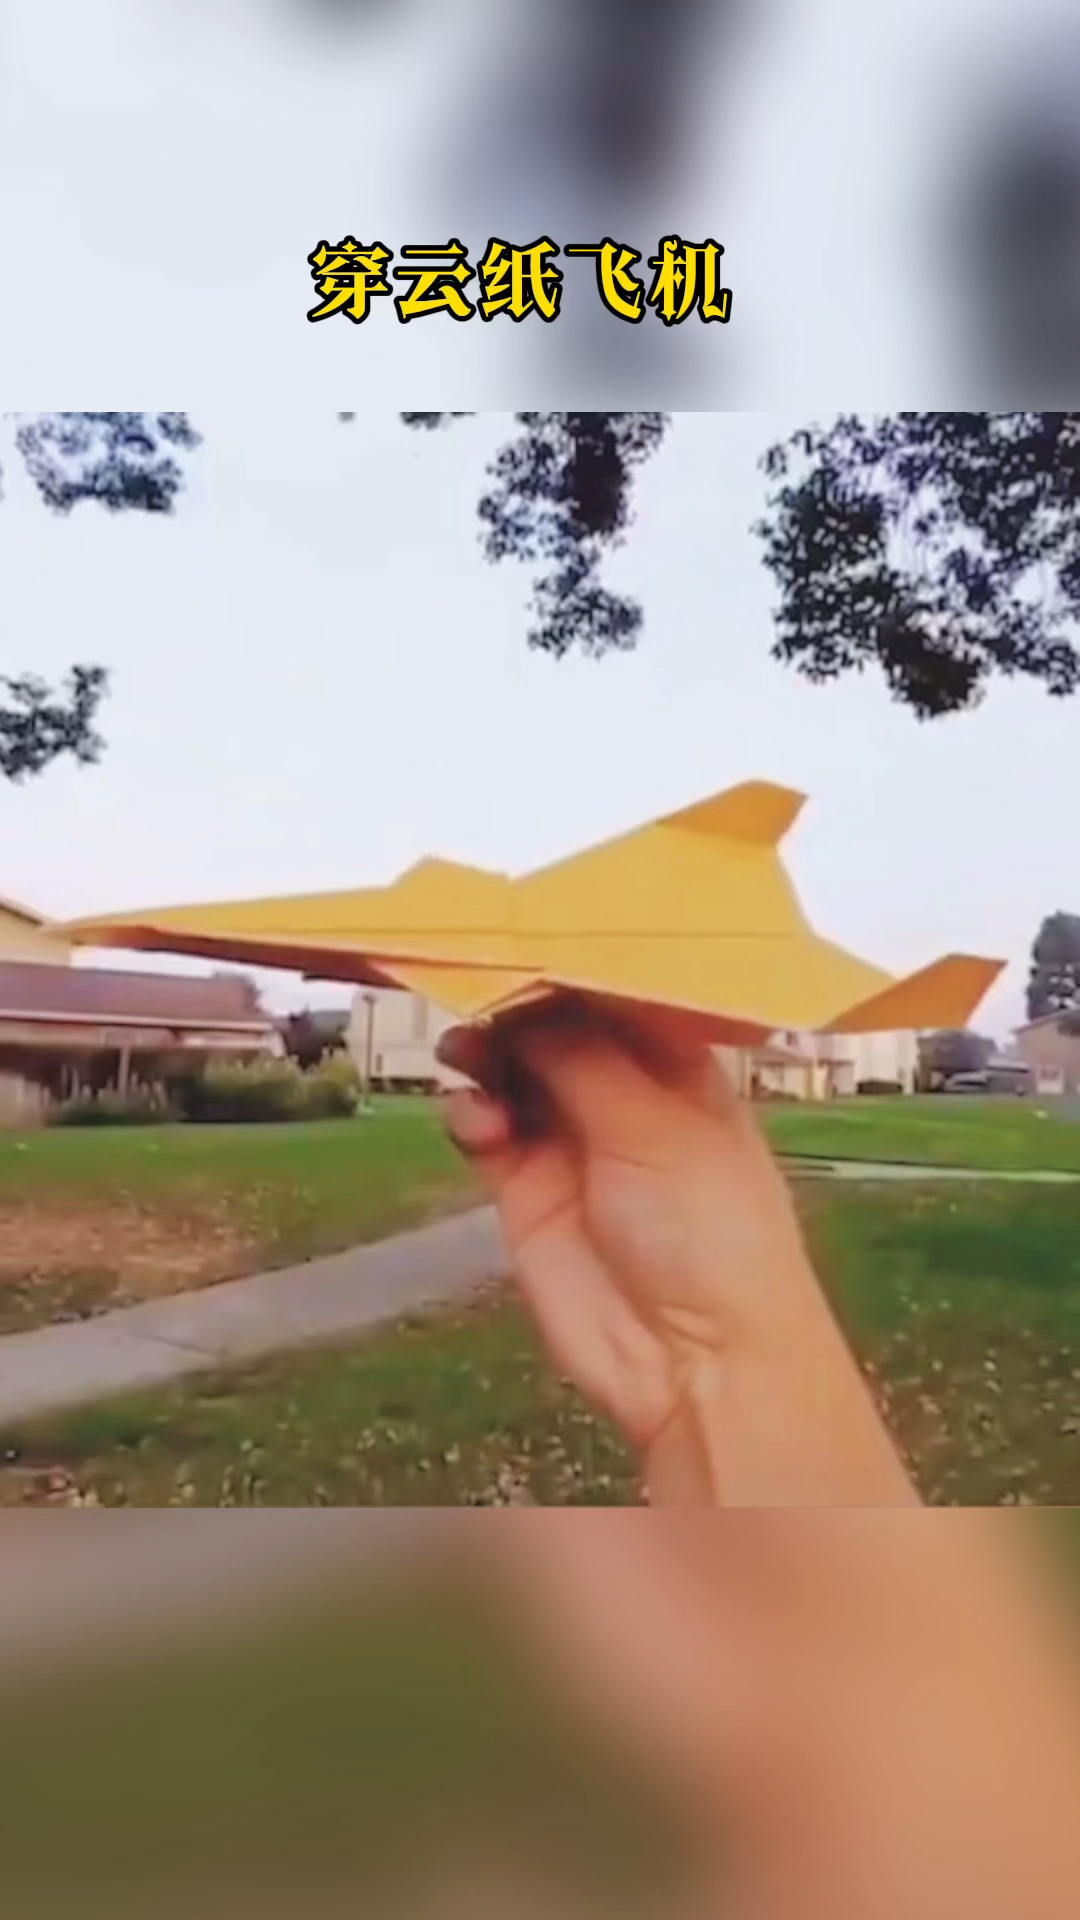 手工制作超好玩的穿云纸飞机